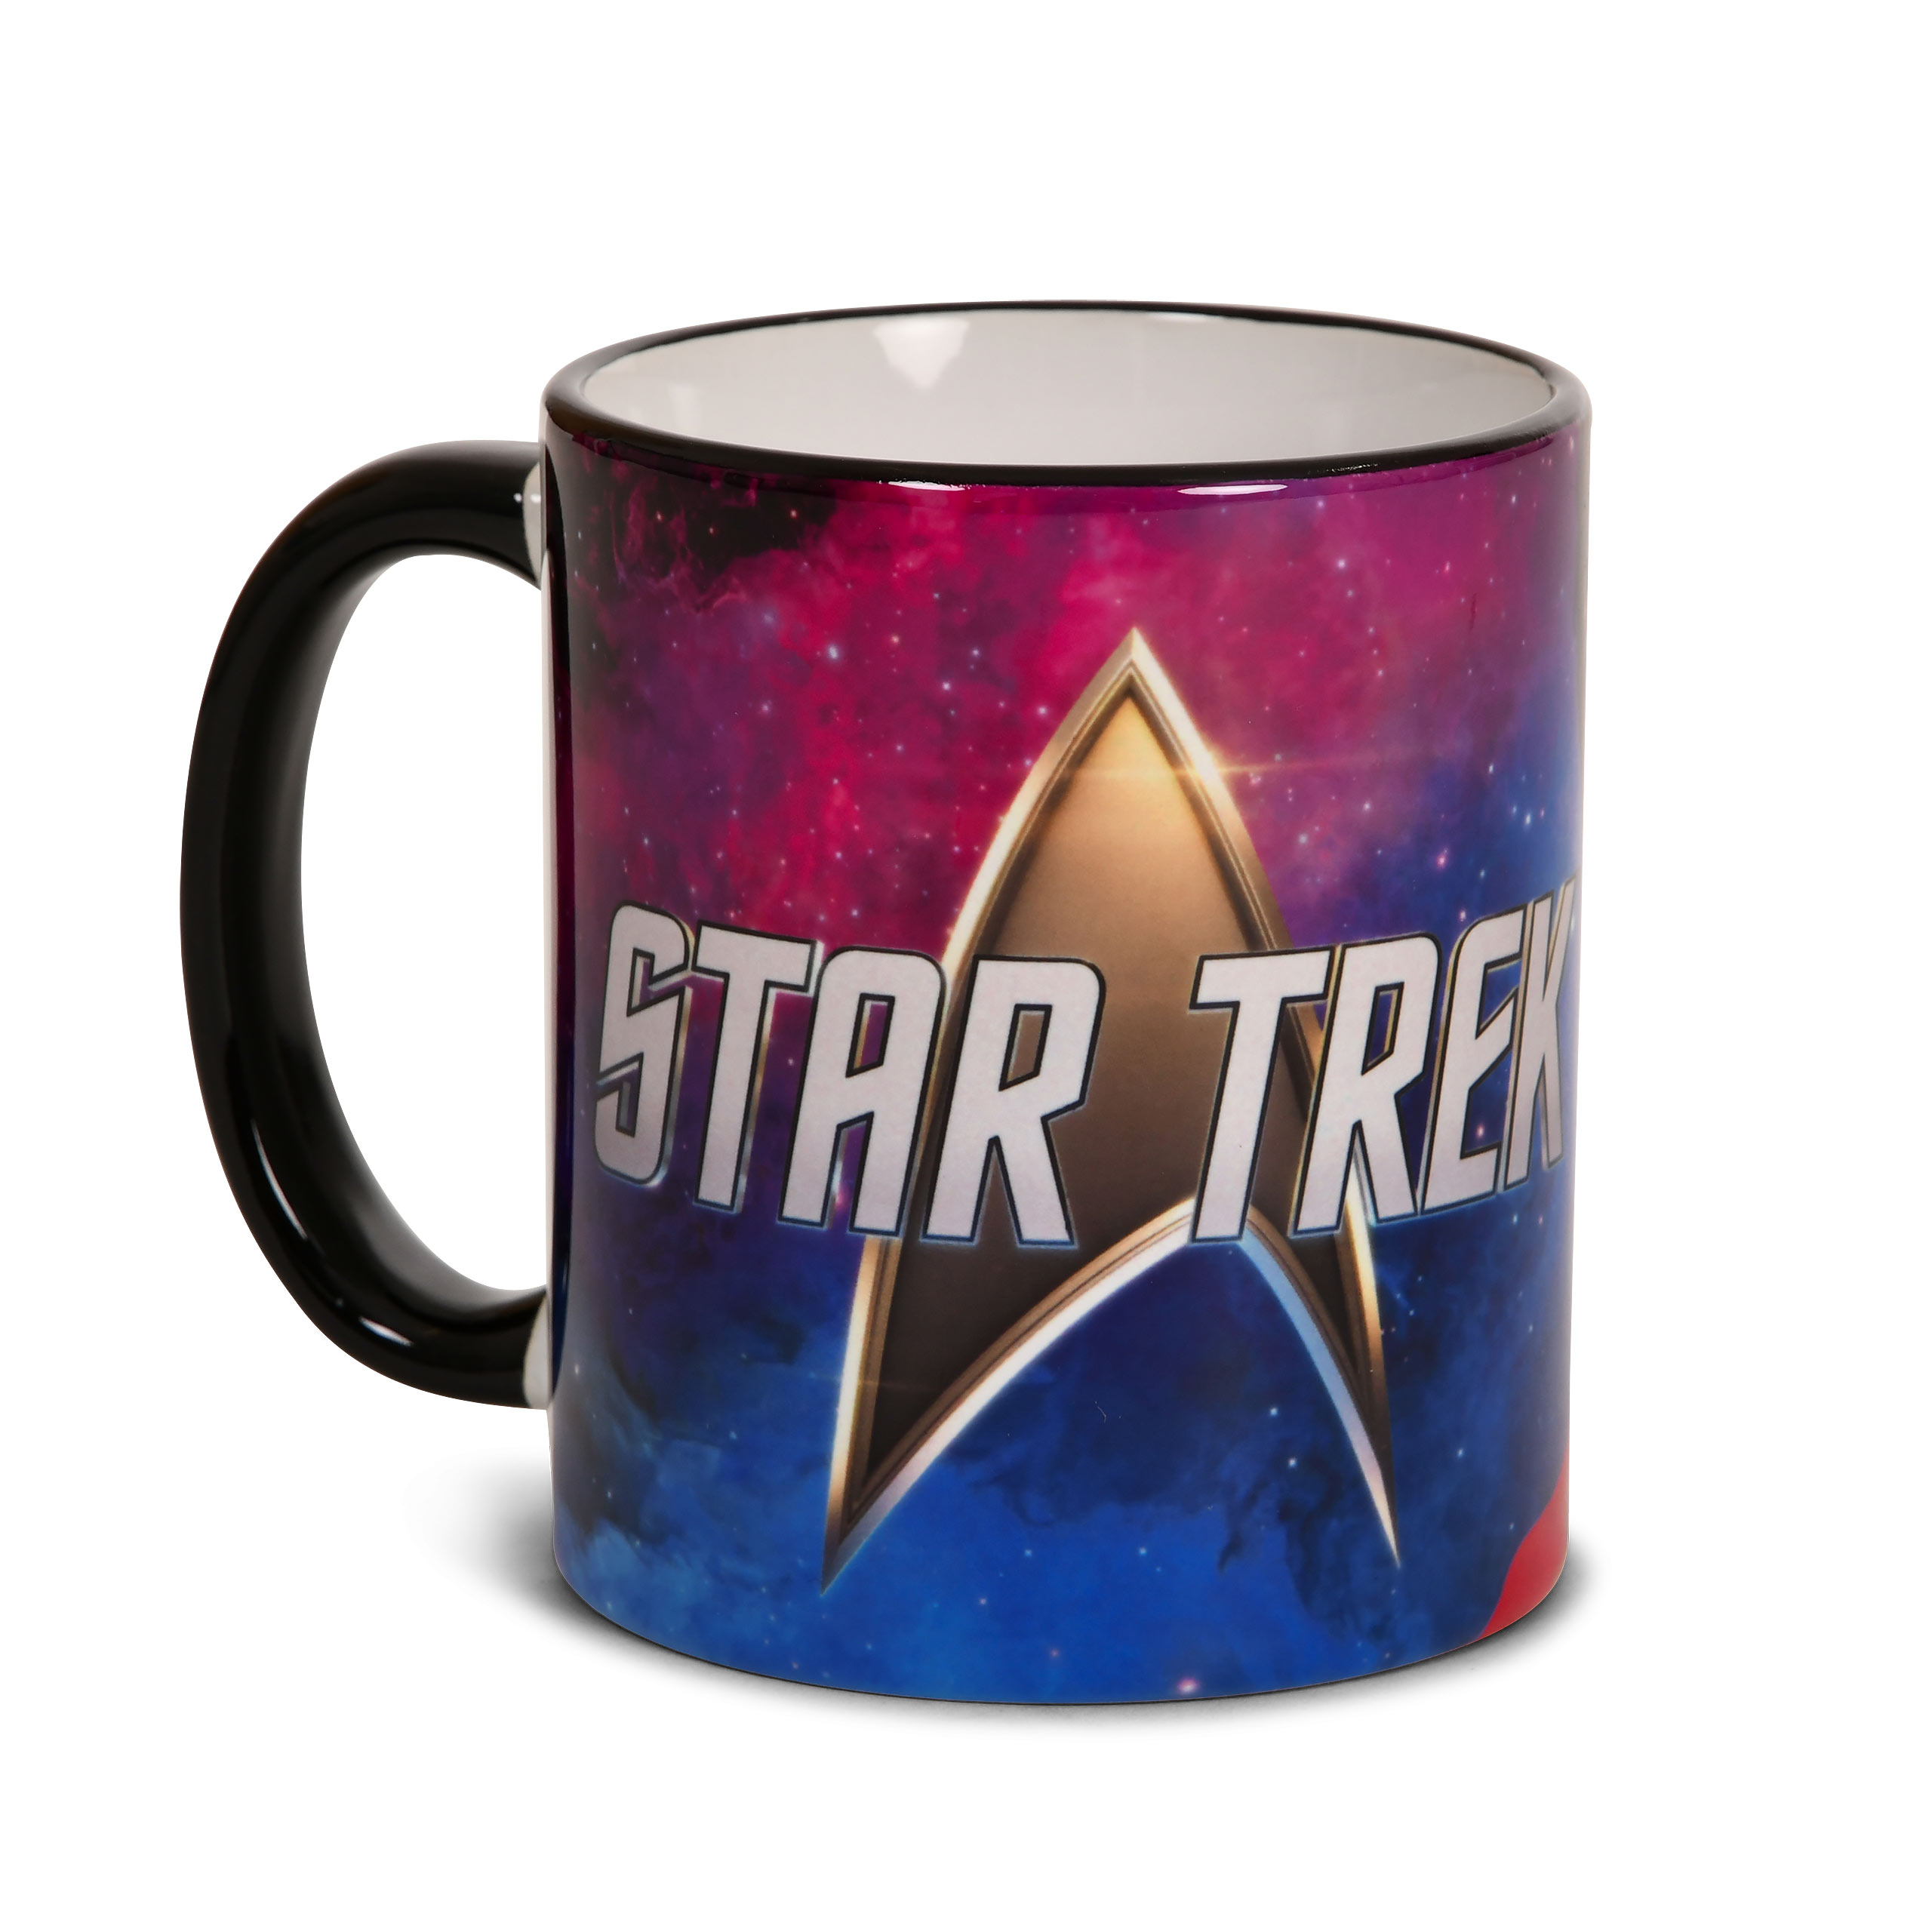 Star Trek - Lieutenant Uhura Mug